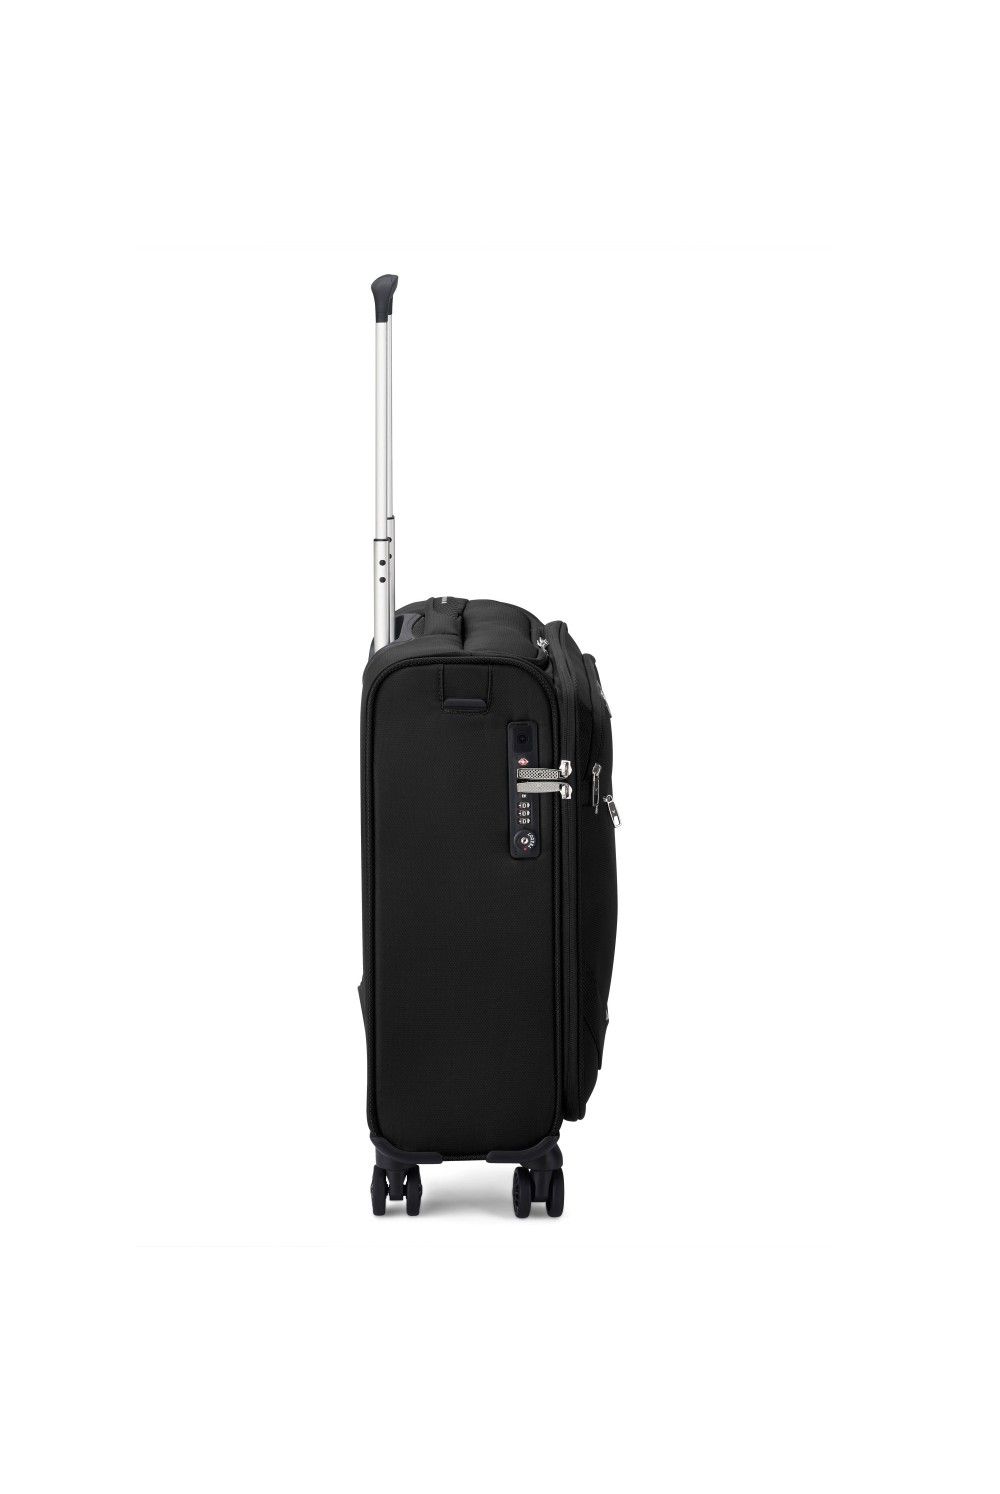 Hand luggage Roncato Joy 55cm 4 wheel